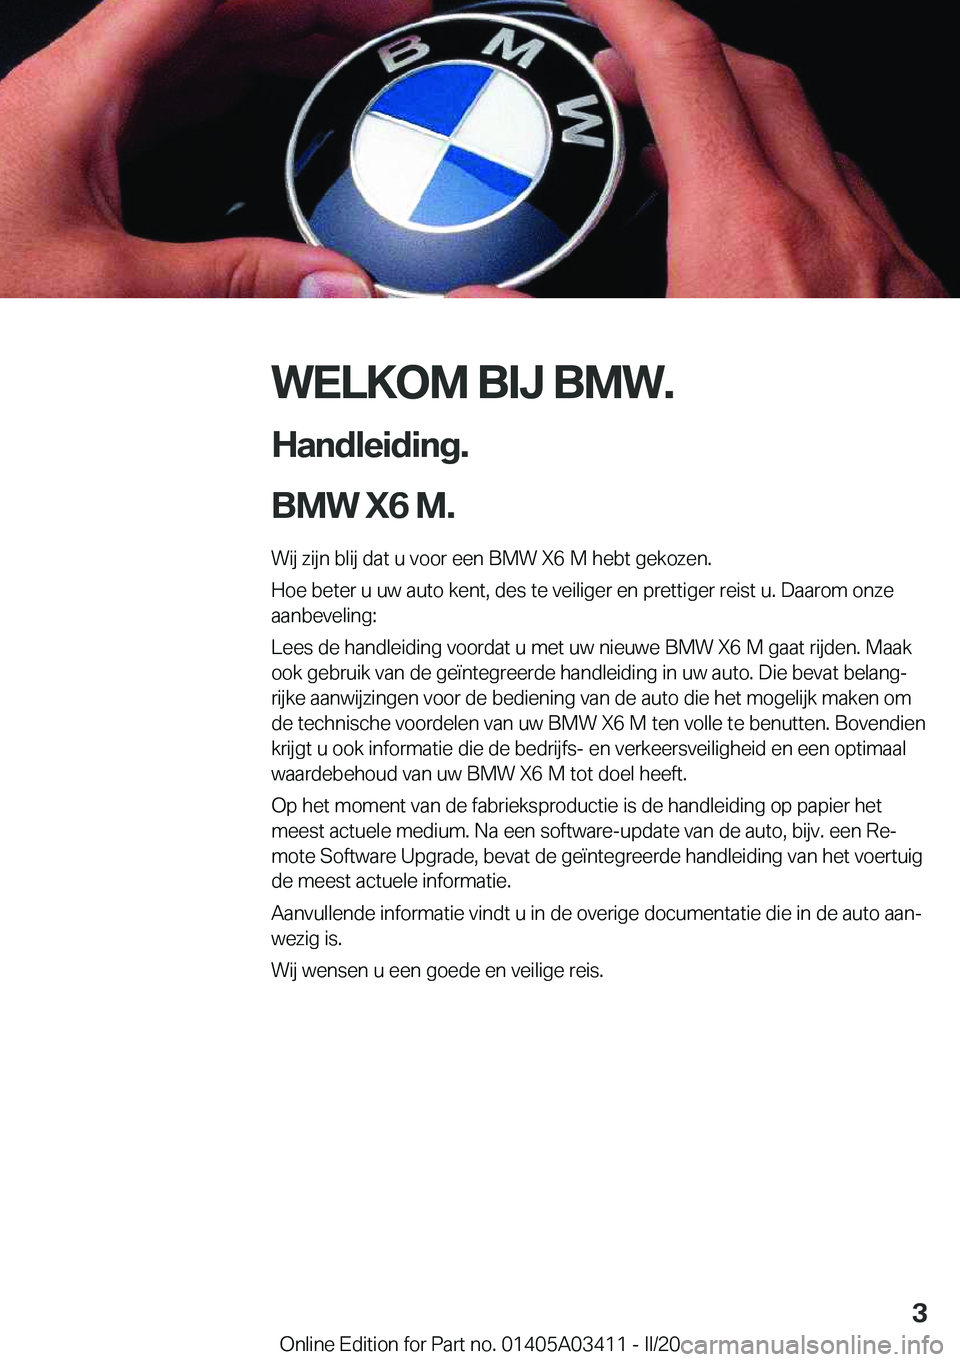 BMW X6 M 2020  Instructieboekjes (in Dutch) �W�E�L�K�O�M��B�I�J��B�M�W�.
�H�a�n�d�l�e�i�d�i�n�g�.
�B�M�W��X�6��M�. �W�i�j��z�i�j�n��b�l�i�j��d�a�t��u��v�o�o�r��e�e�n��B�M�W��X�6��M��h�e�b�t��g�e�k�o�z�e�n�.
�H�o�e��b�e�t�e�r��u